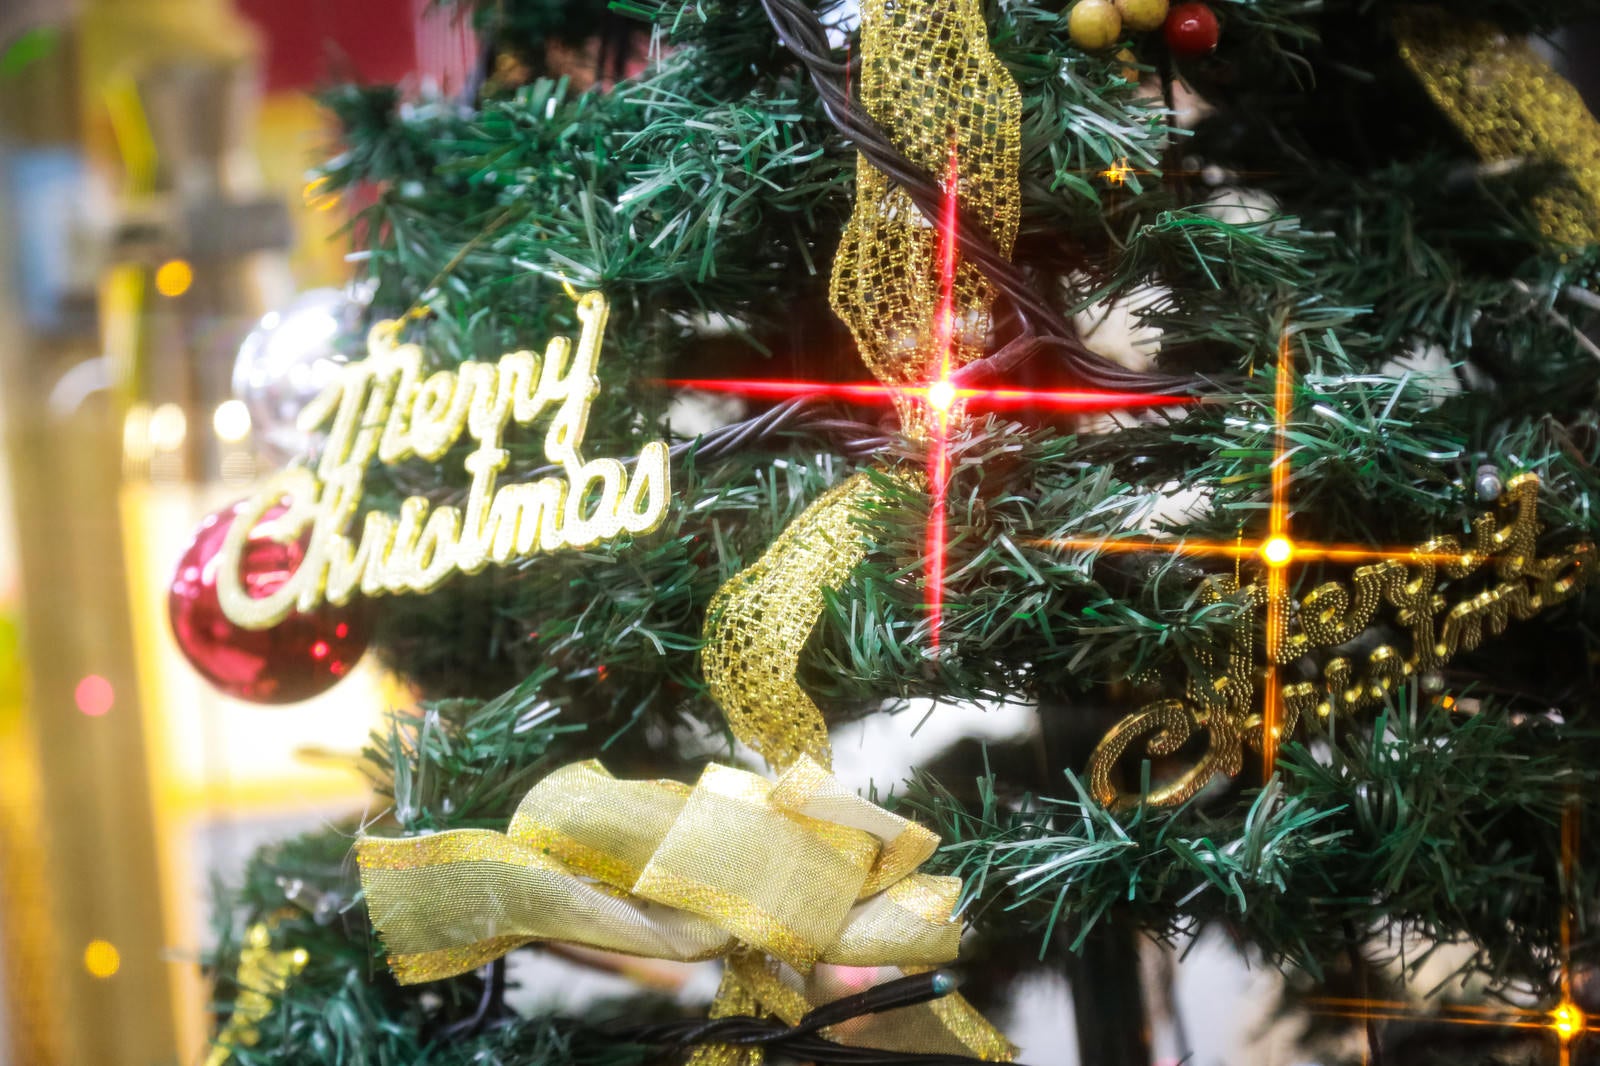 「Merry Christmas と書かれたツリー」の写真